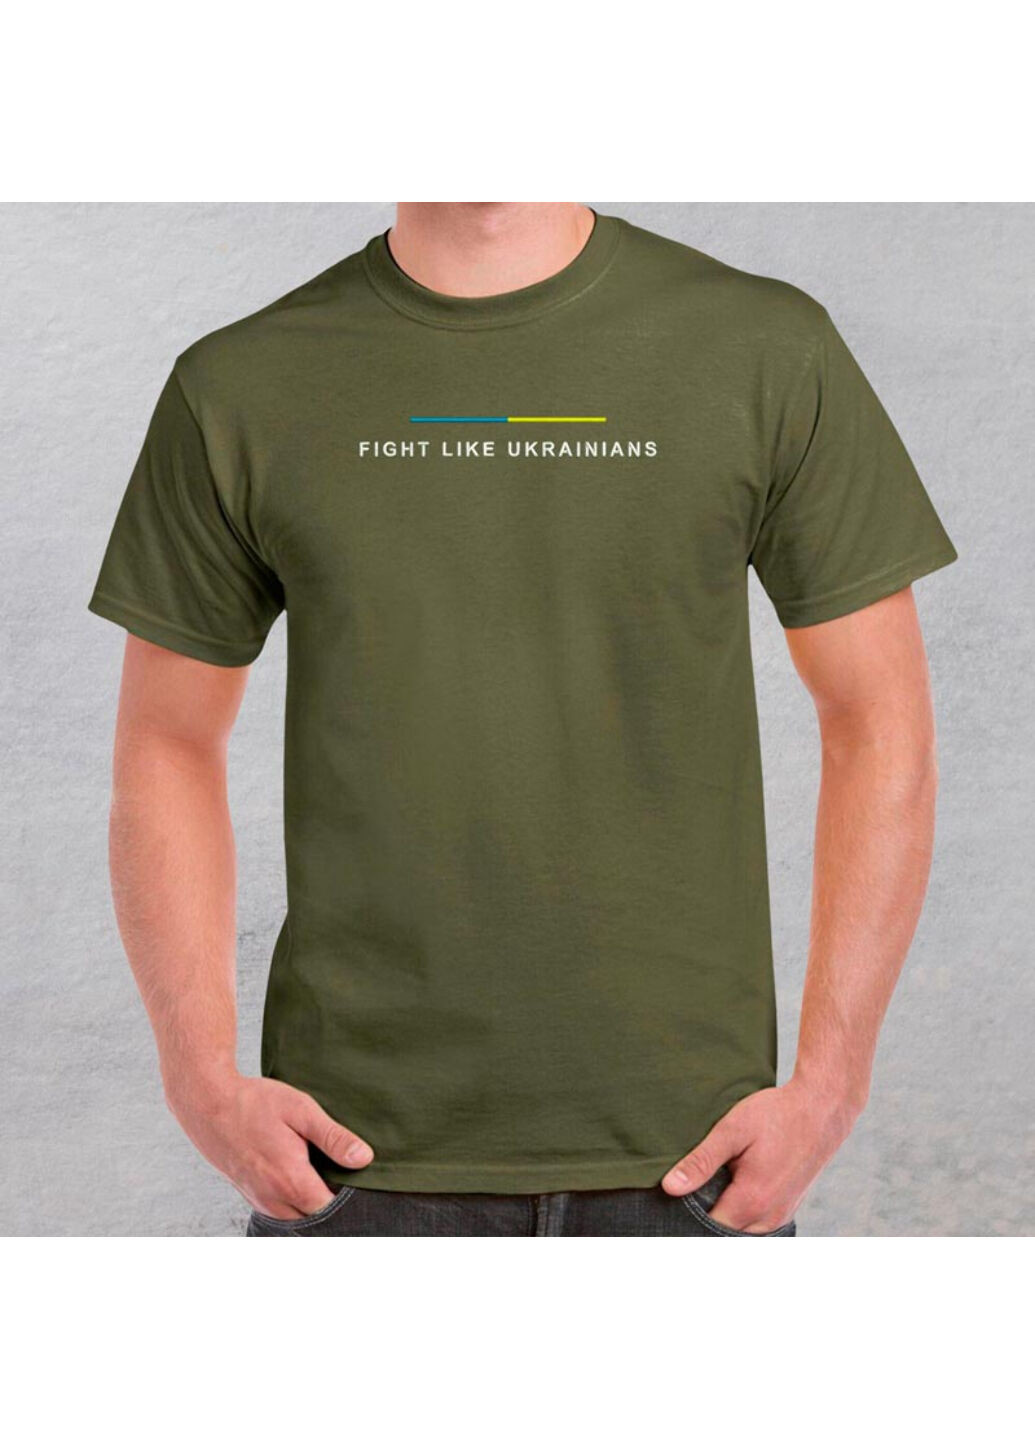 Хаки (оливковая) футболка з вишивкою fight like ukranians 01-1 мужская хаки m No Brand